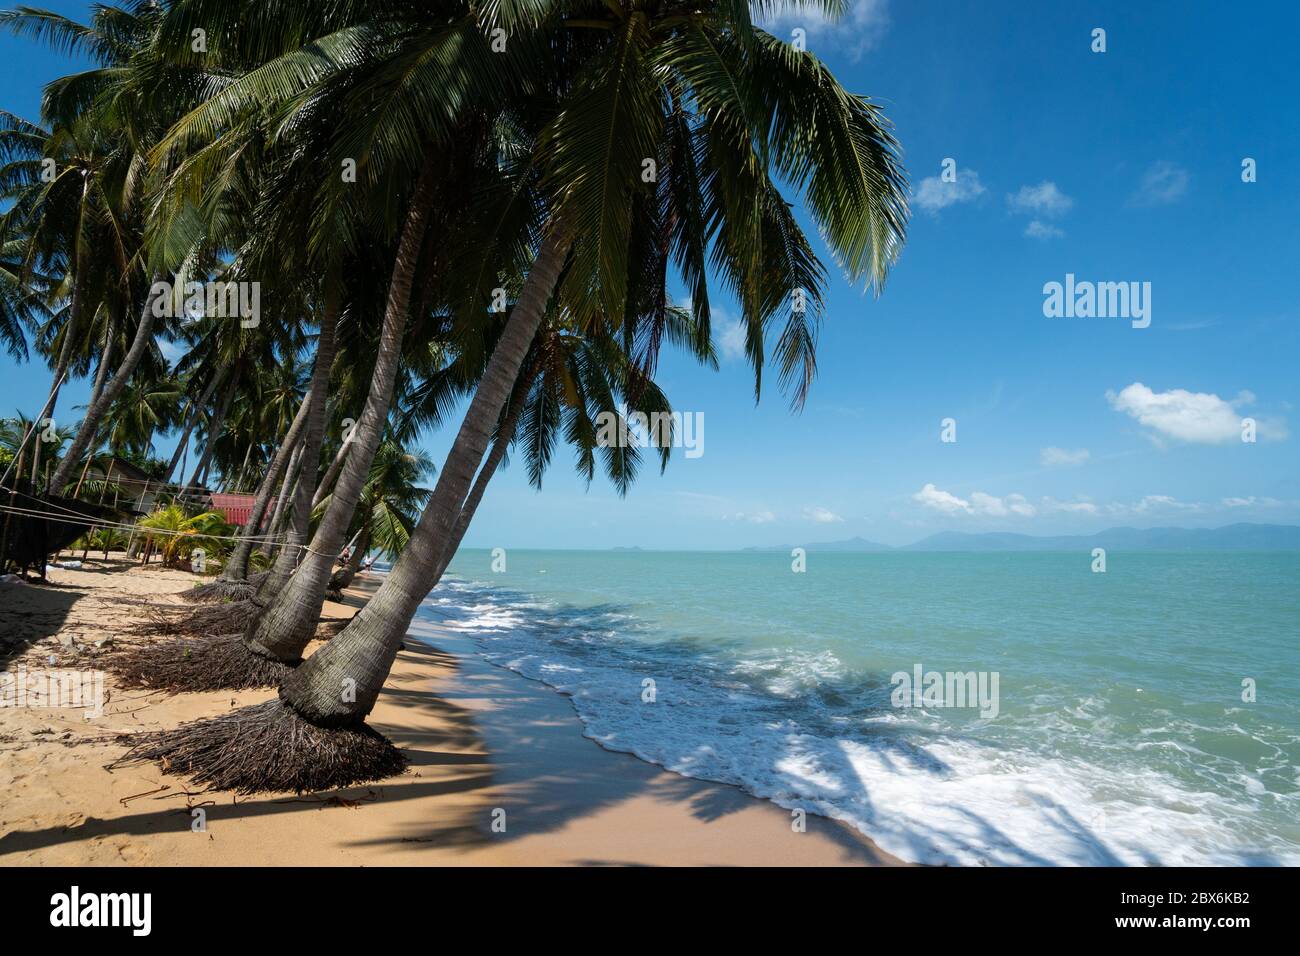 Palme da cocco sulla spiaggia di sabbia bianca con acqua cristallina in una giornata di sole. Foto Stock